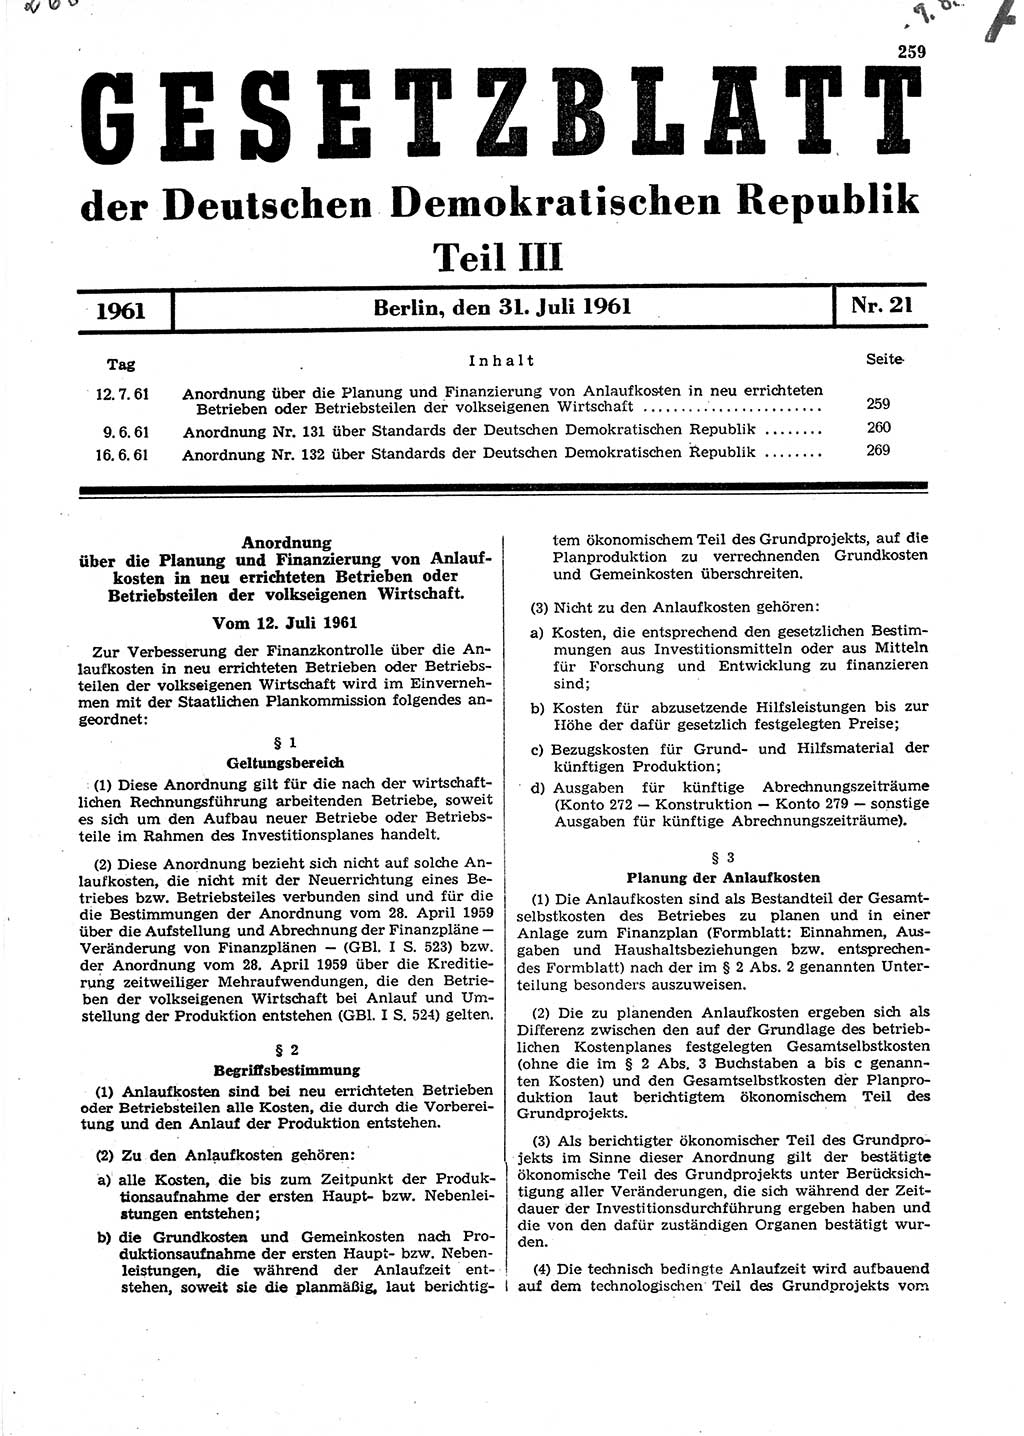 Gesetzblatt (GBl.) der Deutschen Demokratischen Republik (DDR) Teil ⅠⅠⅠ 1961, Seite 259 (GBl. DDR ⅠⅠⅠ 1961, S. 259)